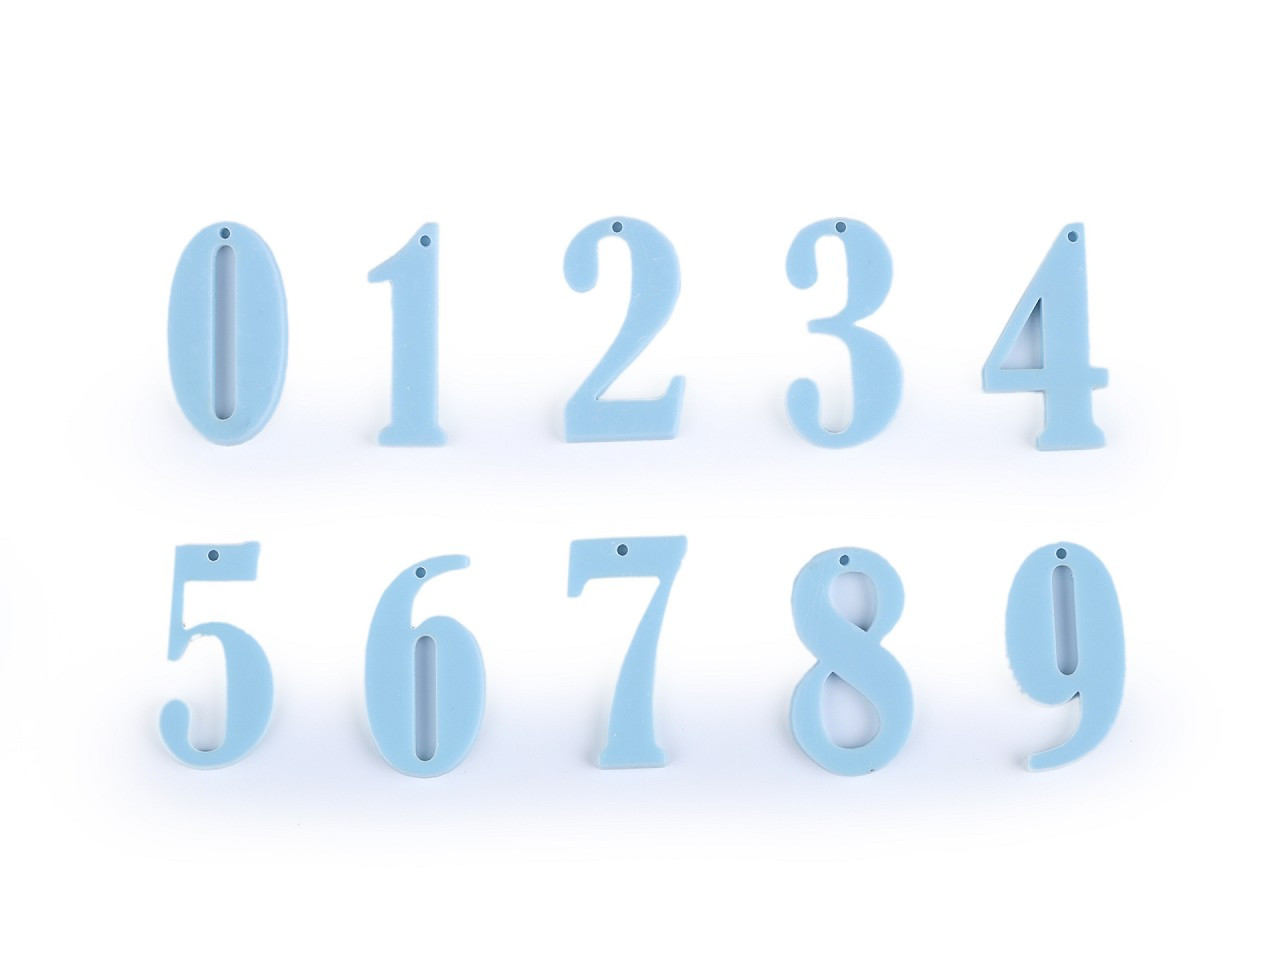 Čísla k přišití, zavěšení, nalepení; sada čísel od 0-9, barva 3 modrá světlá